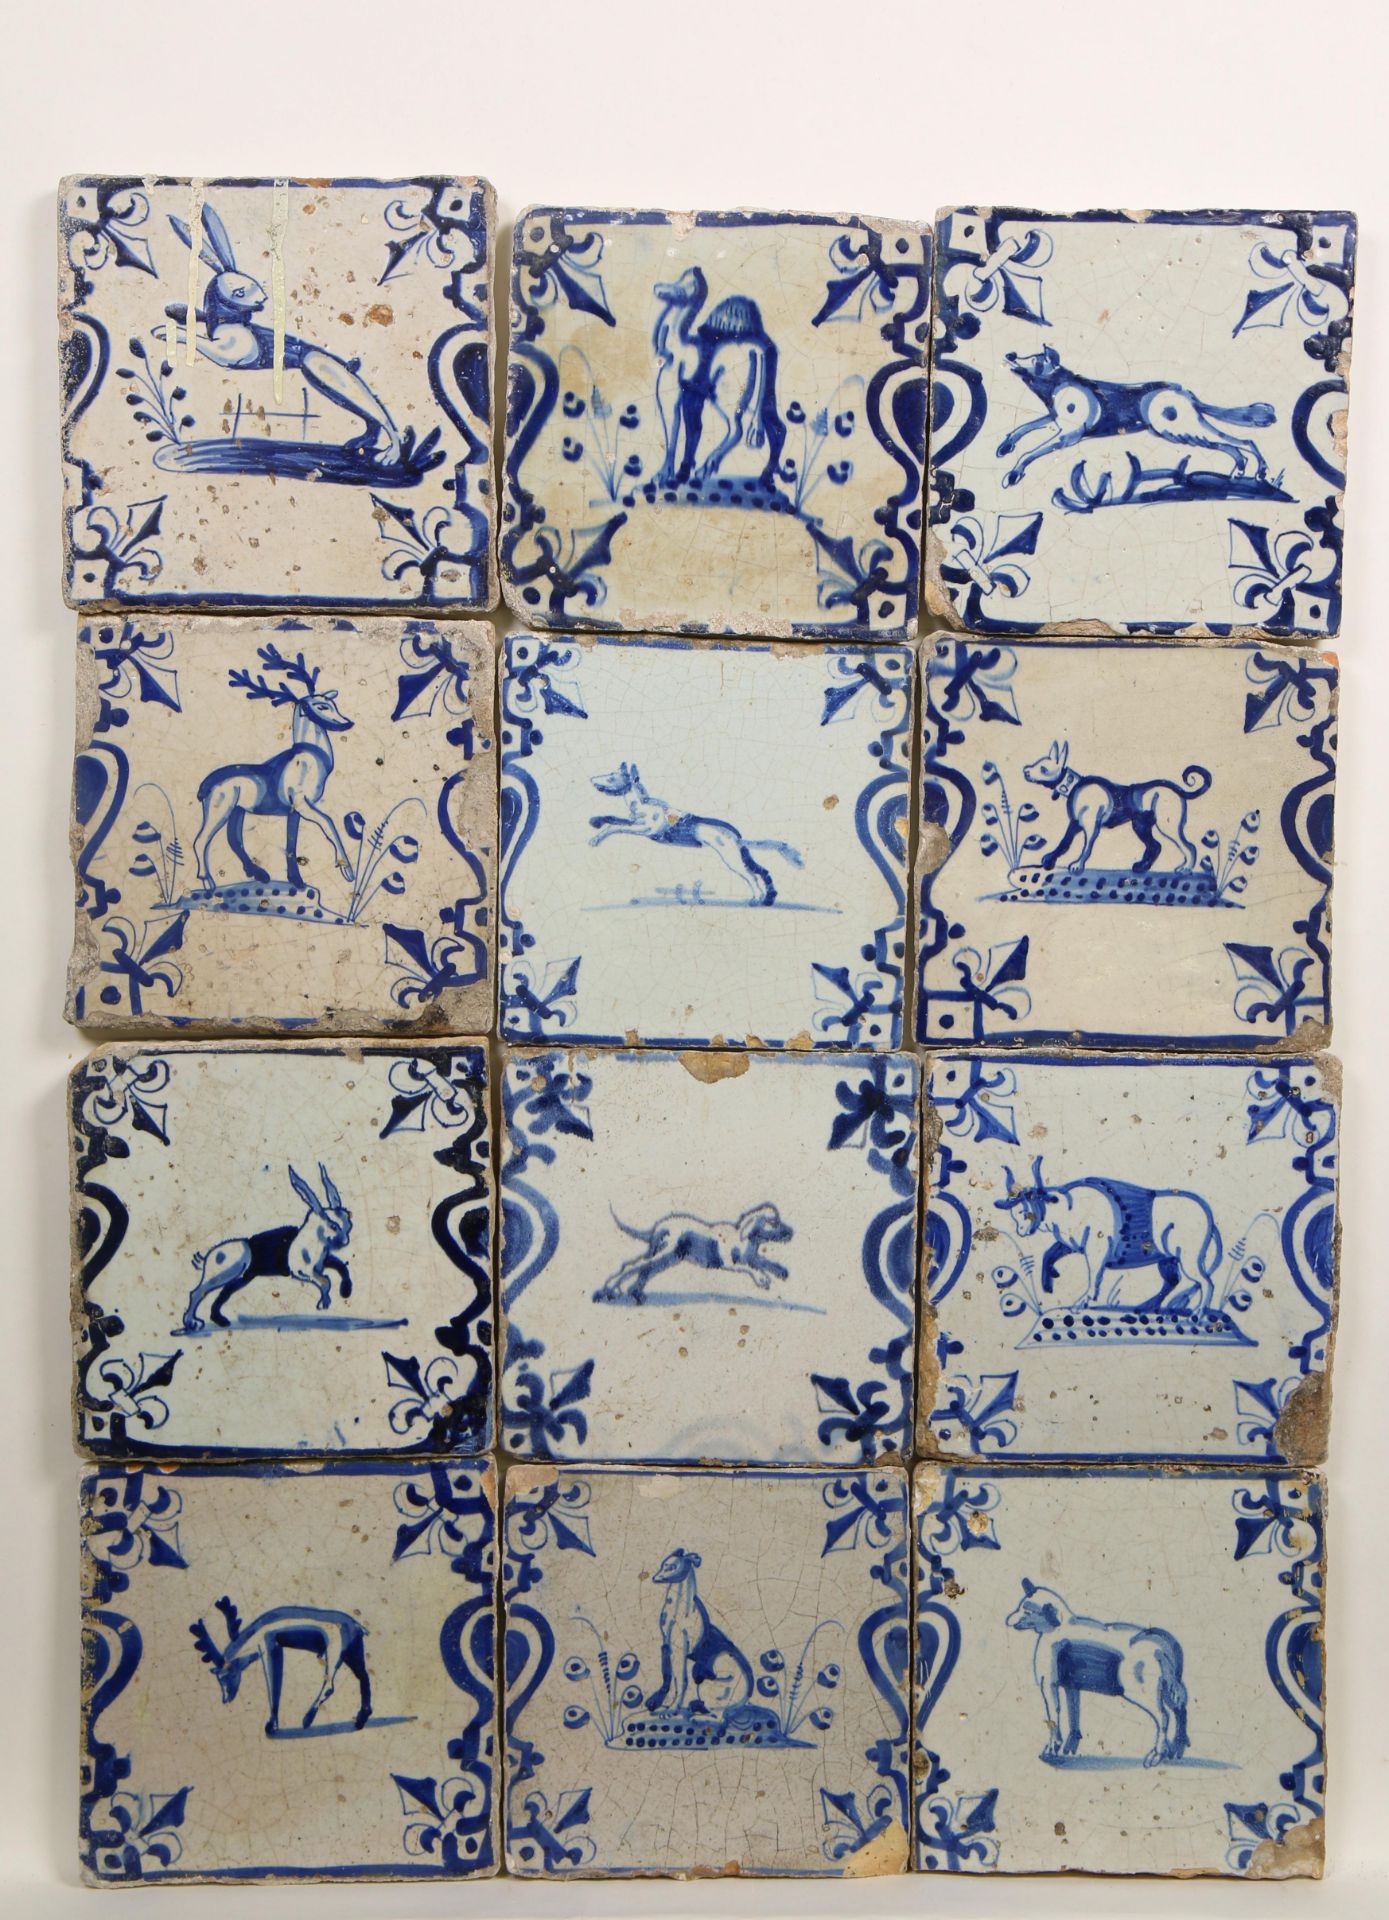 Twaalf blauw aardewerk dierendecor tegels, 1625-1650,